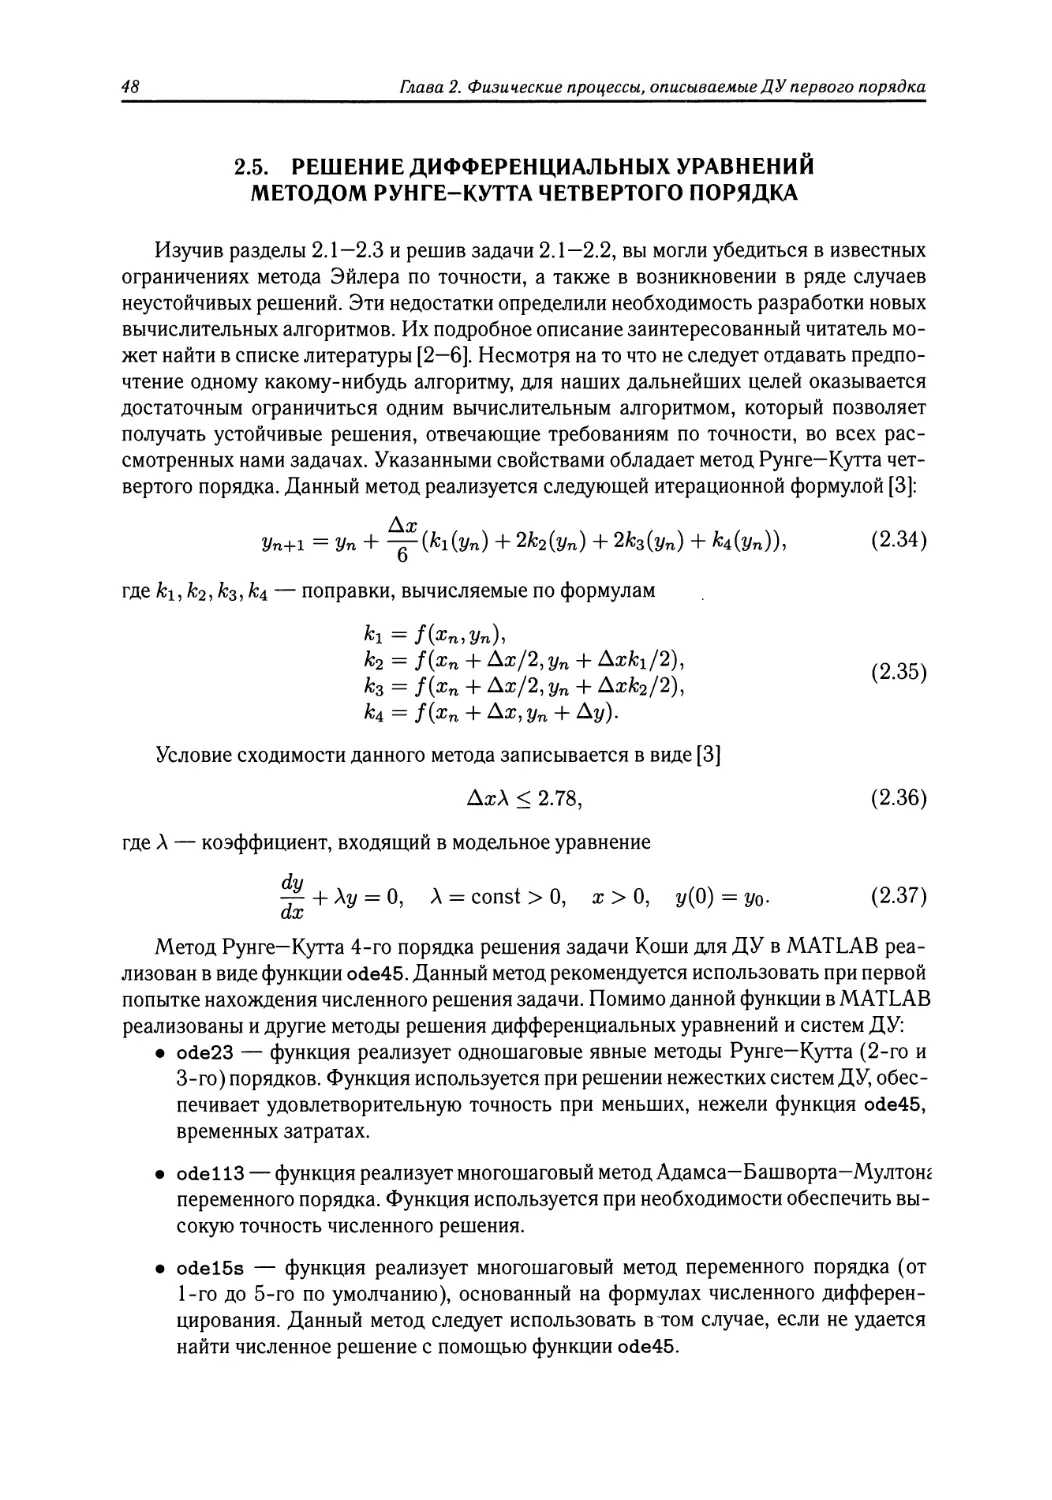 2.5 Решение дифференциальных уравнений методом Рунге—Кутта четвертого порядка